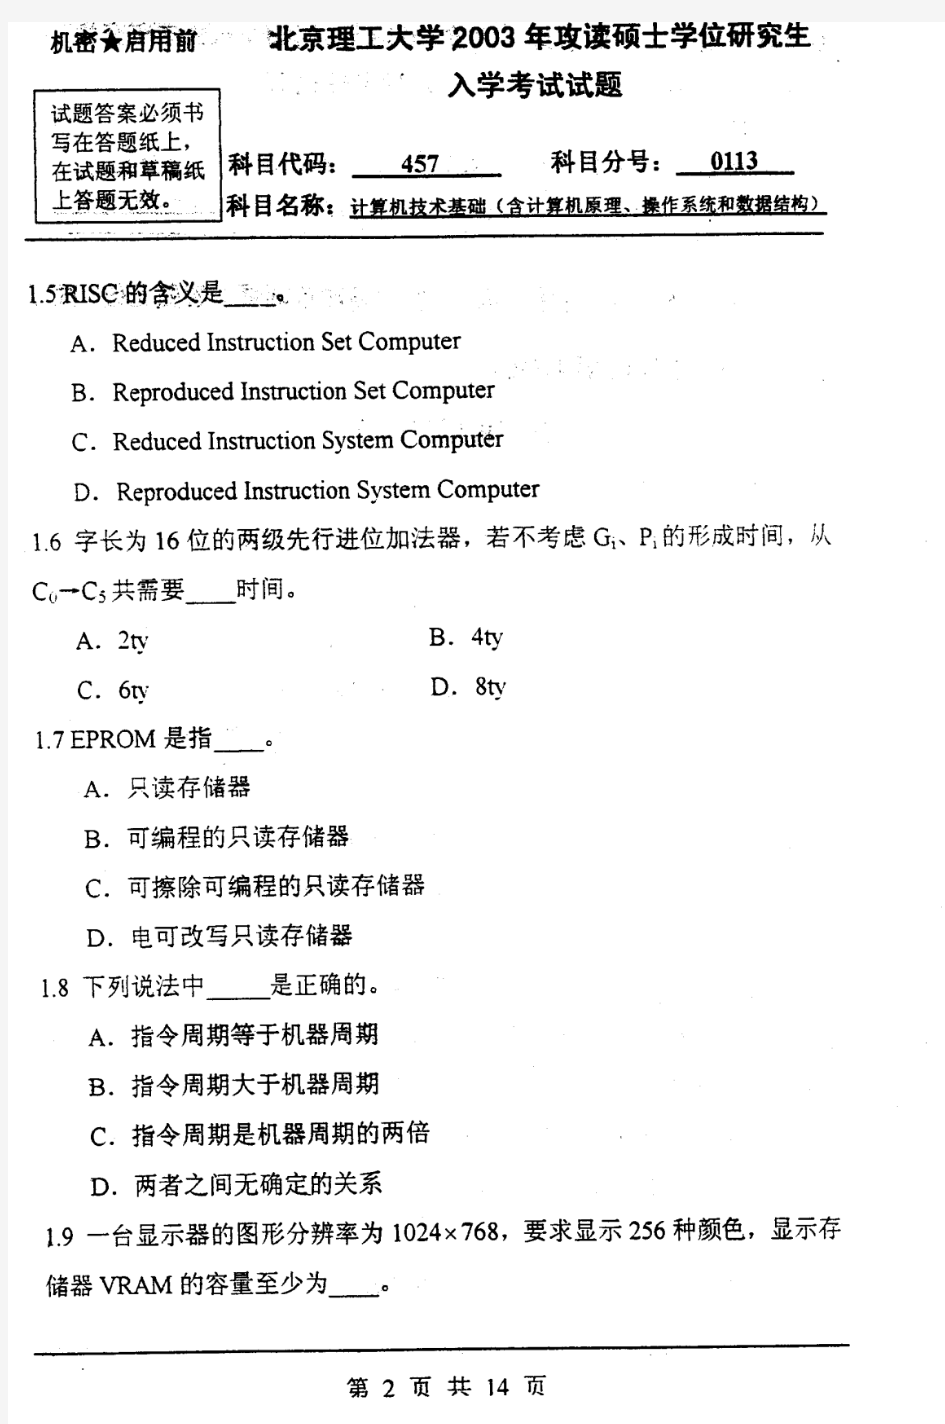 北京理工大学 计算机技术基础(含计算机原理、操作系统和数据结构)-2003